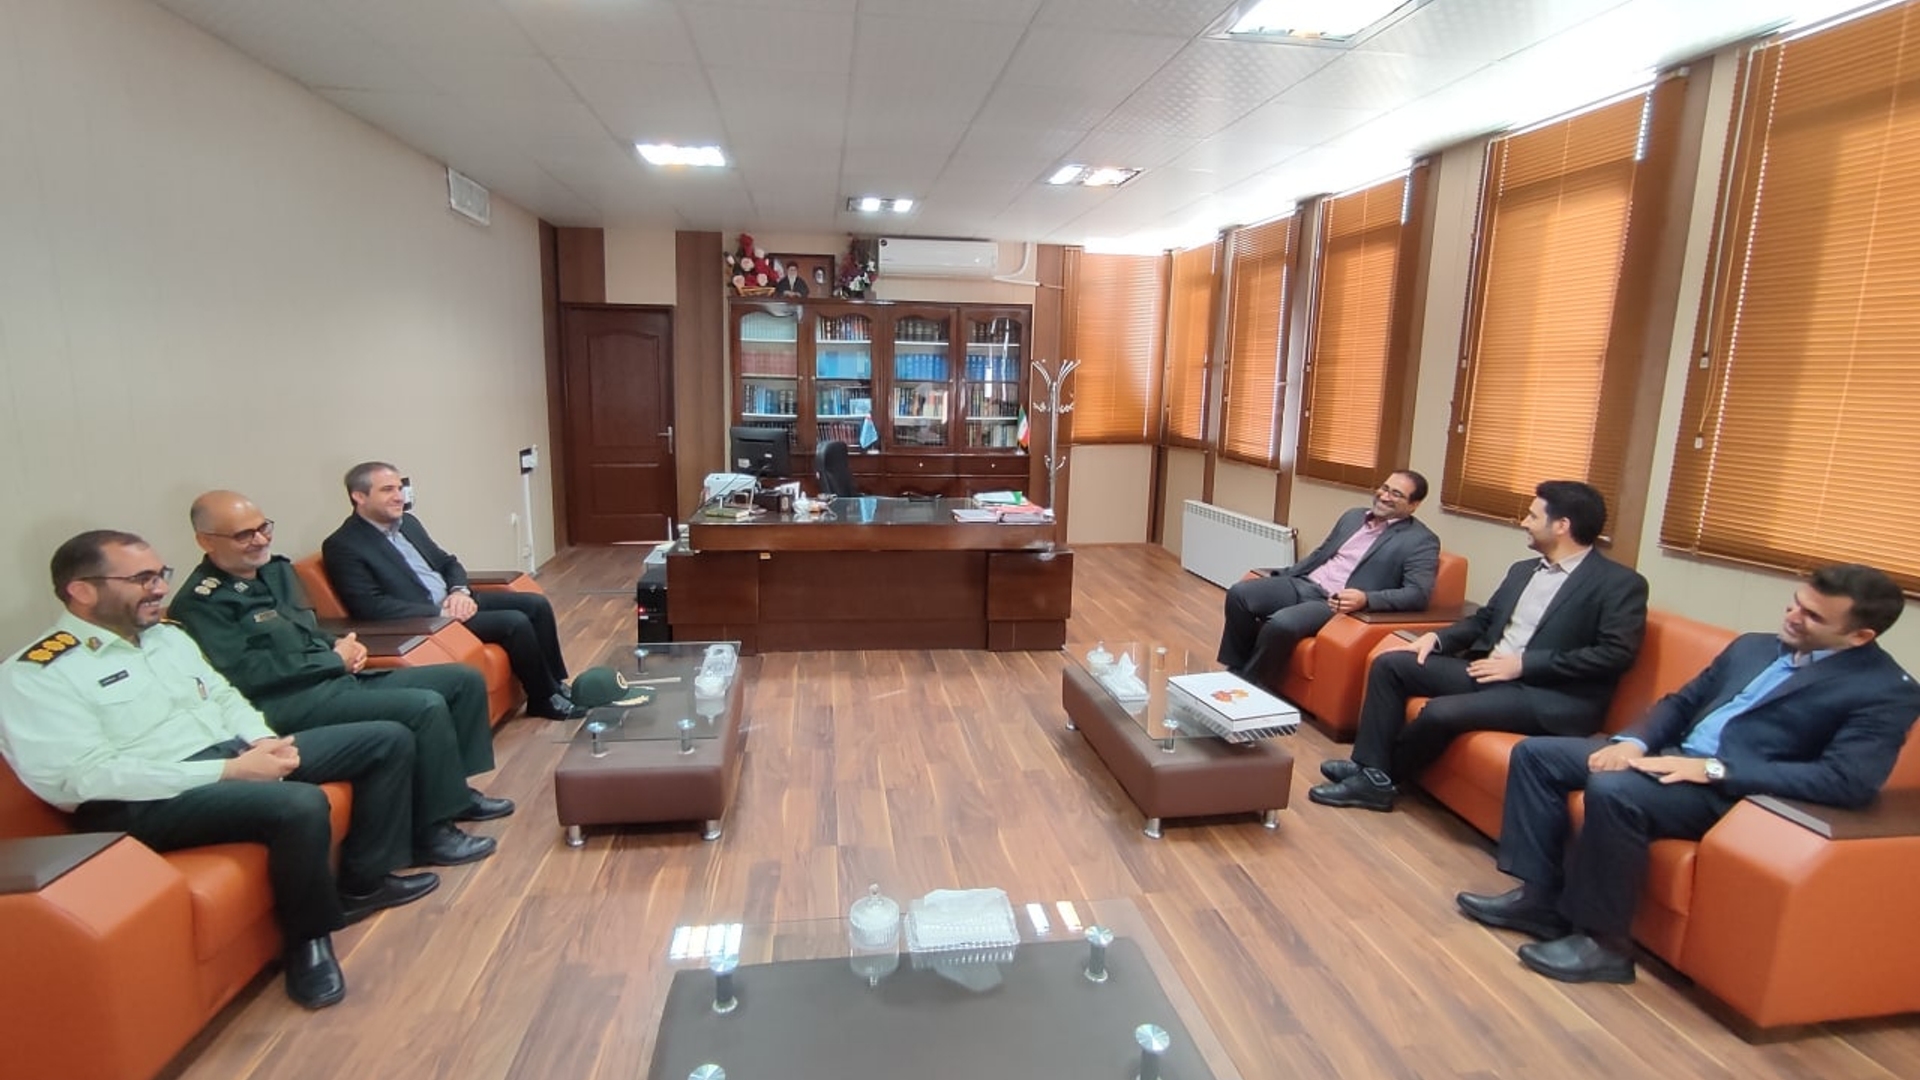 به مناسبت هفته قوه قضاییه ، مهدی الیاسی سرپرست فرمانداری ویژه شهرستان ساوه به همراه شورای تامین با دادستان ساوه دیدار و گفتگو کردند.